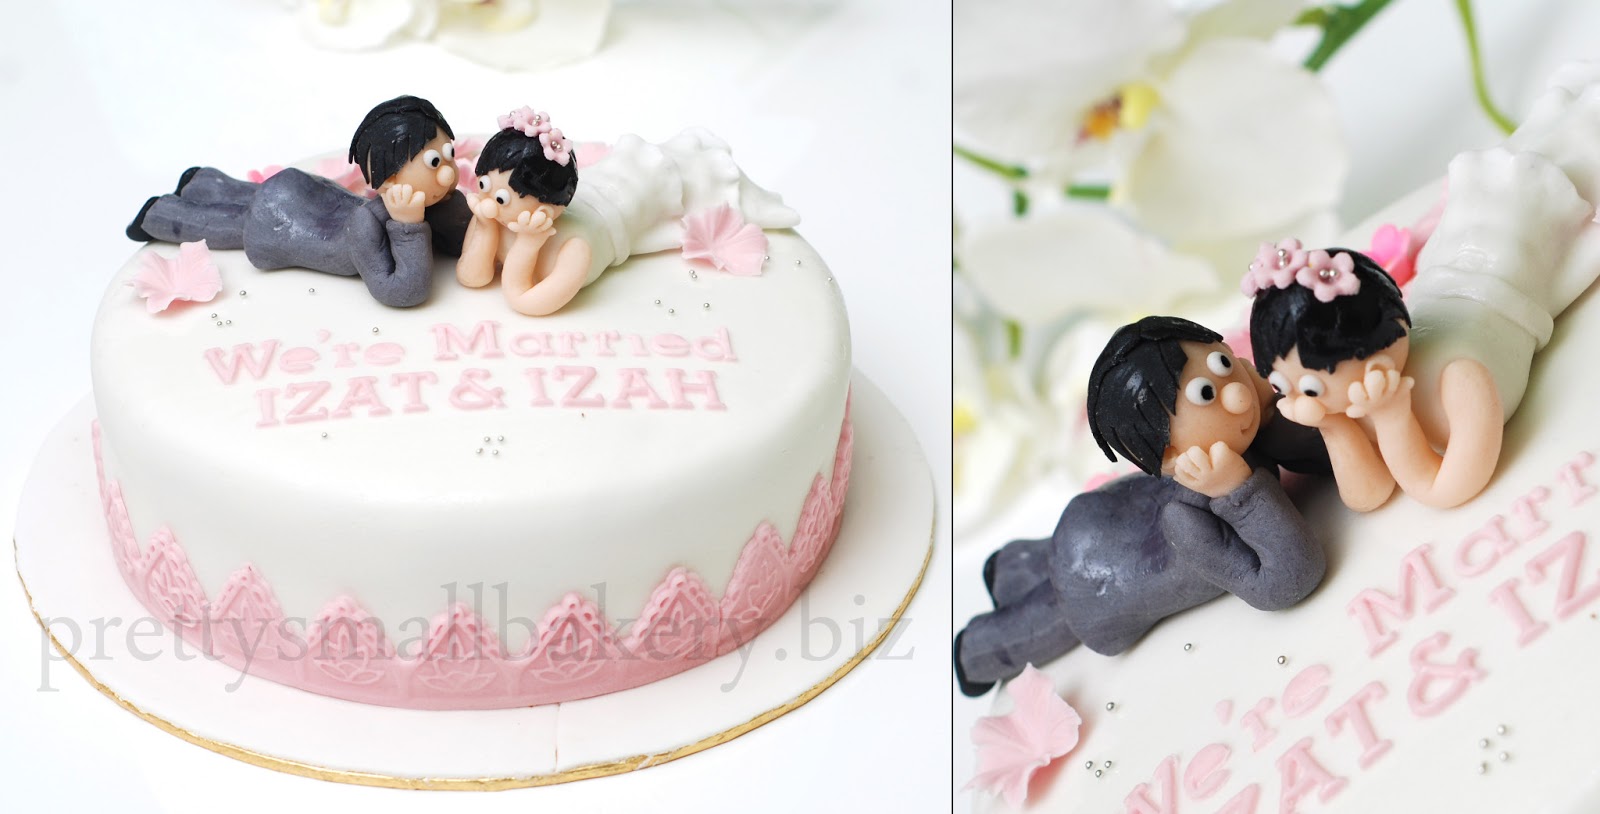 Kek pengantin 'couple wed' yang paling laris dr 